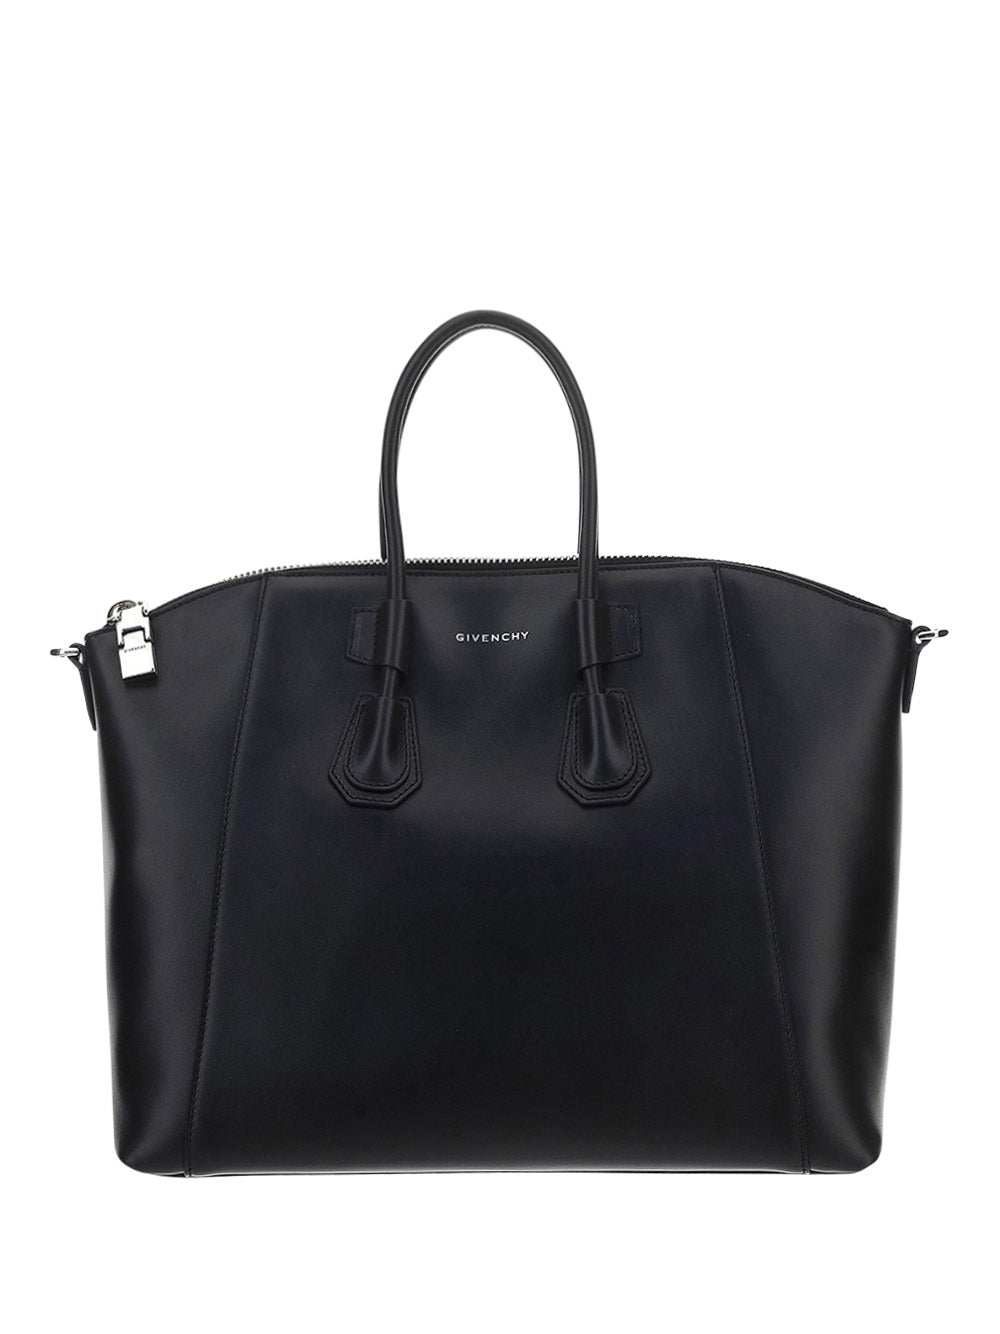 Small Antigona Sport Bag In Leather - Black